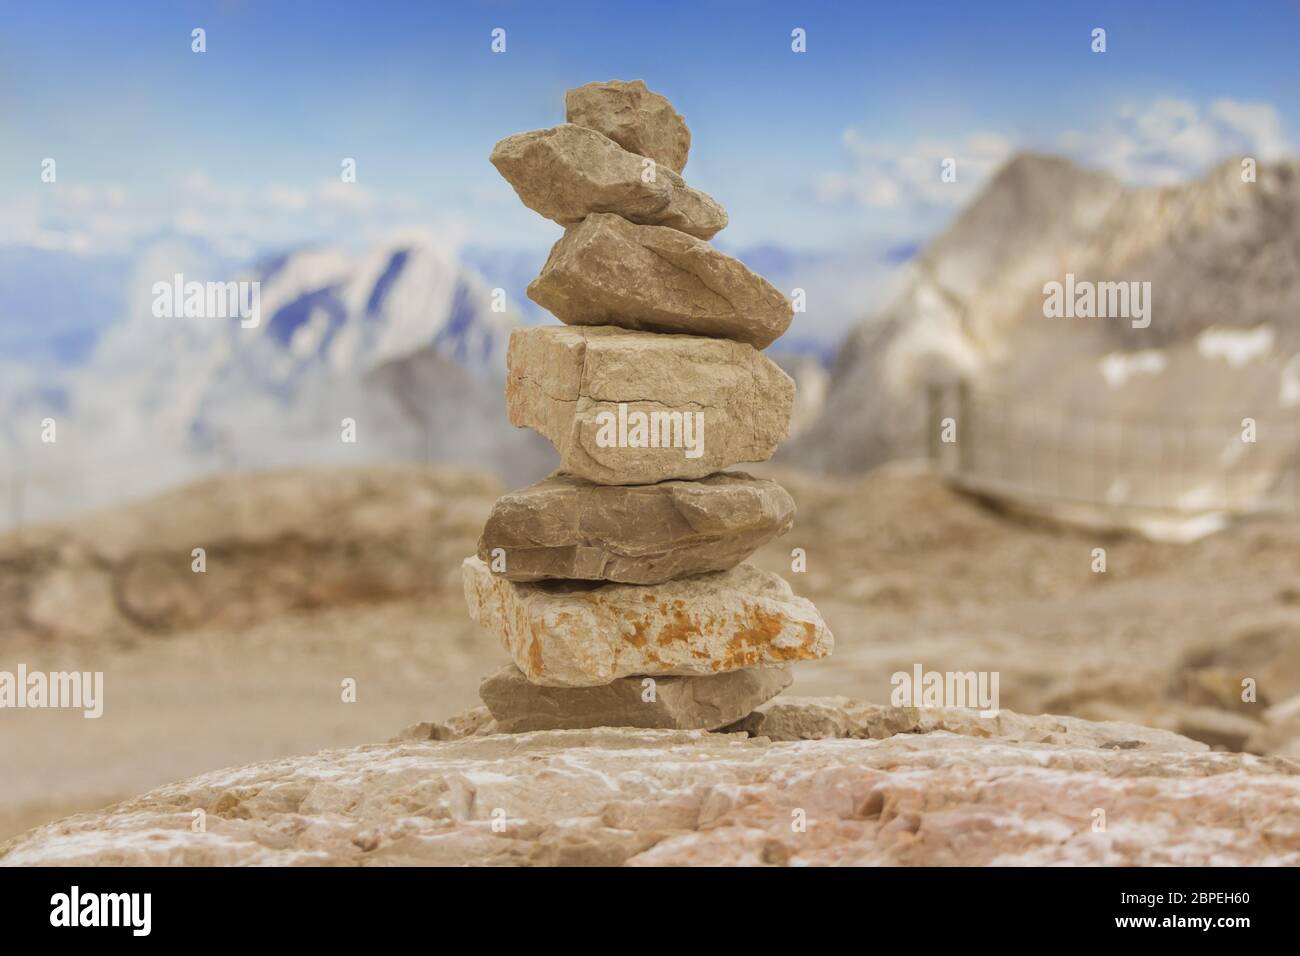 Steinturm in Gipfel Panorama zeigt Erfolg, Kreativität und Ziele. Aber auch Gesundheit, Meditation, Yoga oder Glauben und Trauer. Stock Photo